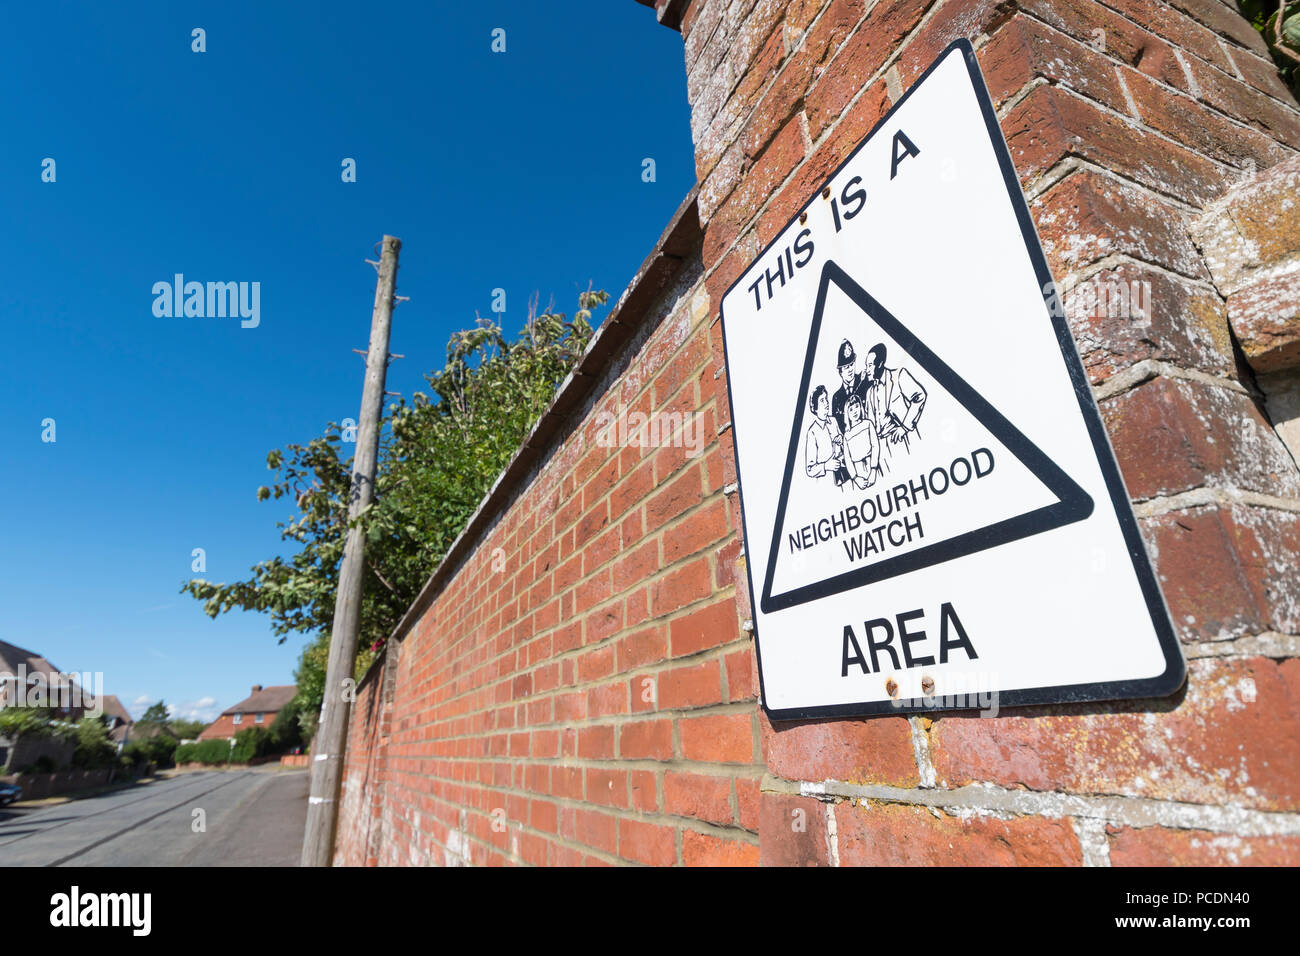 La surveillance de quartier signe sur un mur à la fin d'une route dans la région de Littlehampton, West Sussex, Angleterre, Royaume-Uni. Banque D'Images